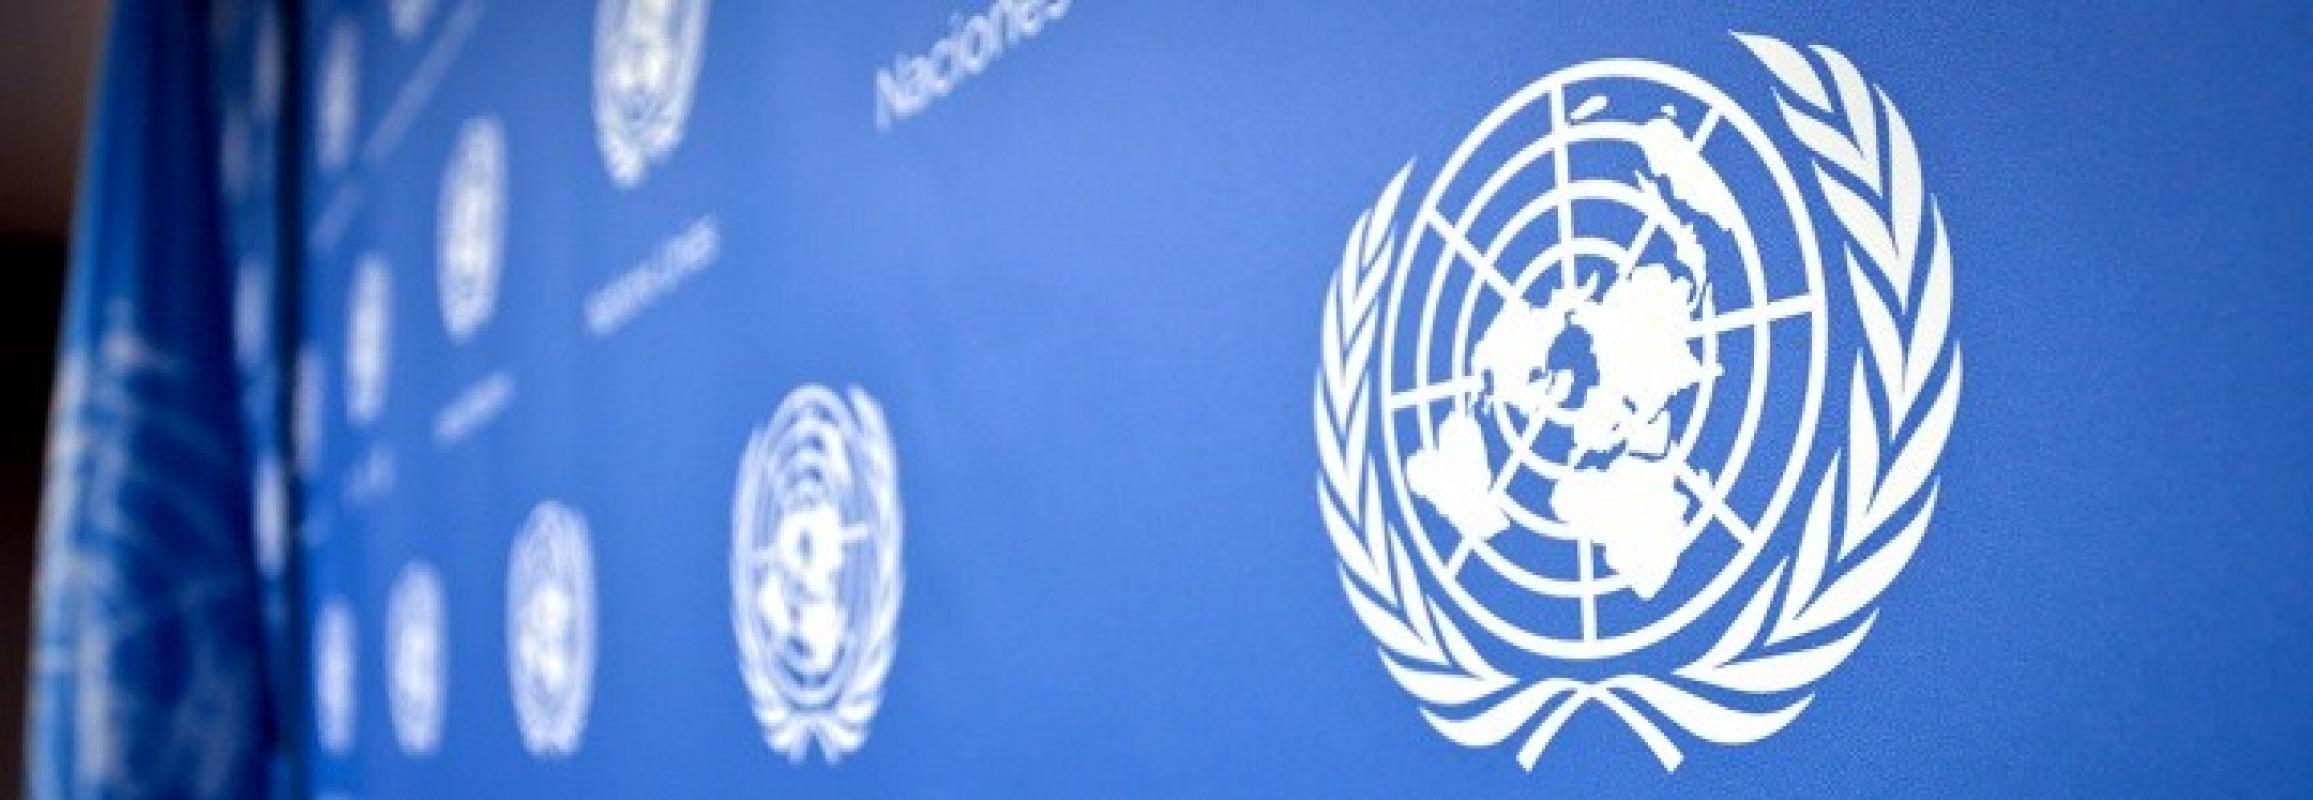 JT vadovas žada remti LGBT „teises“ prieš visuotinį „šališkumą“